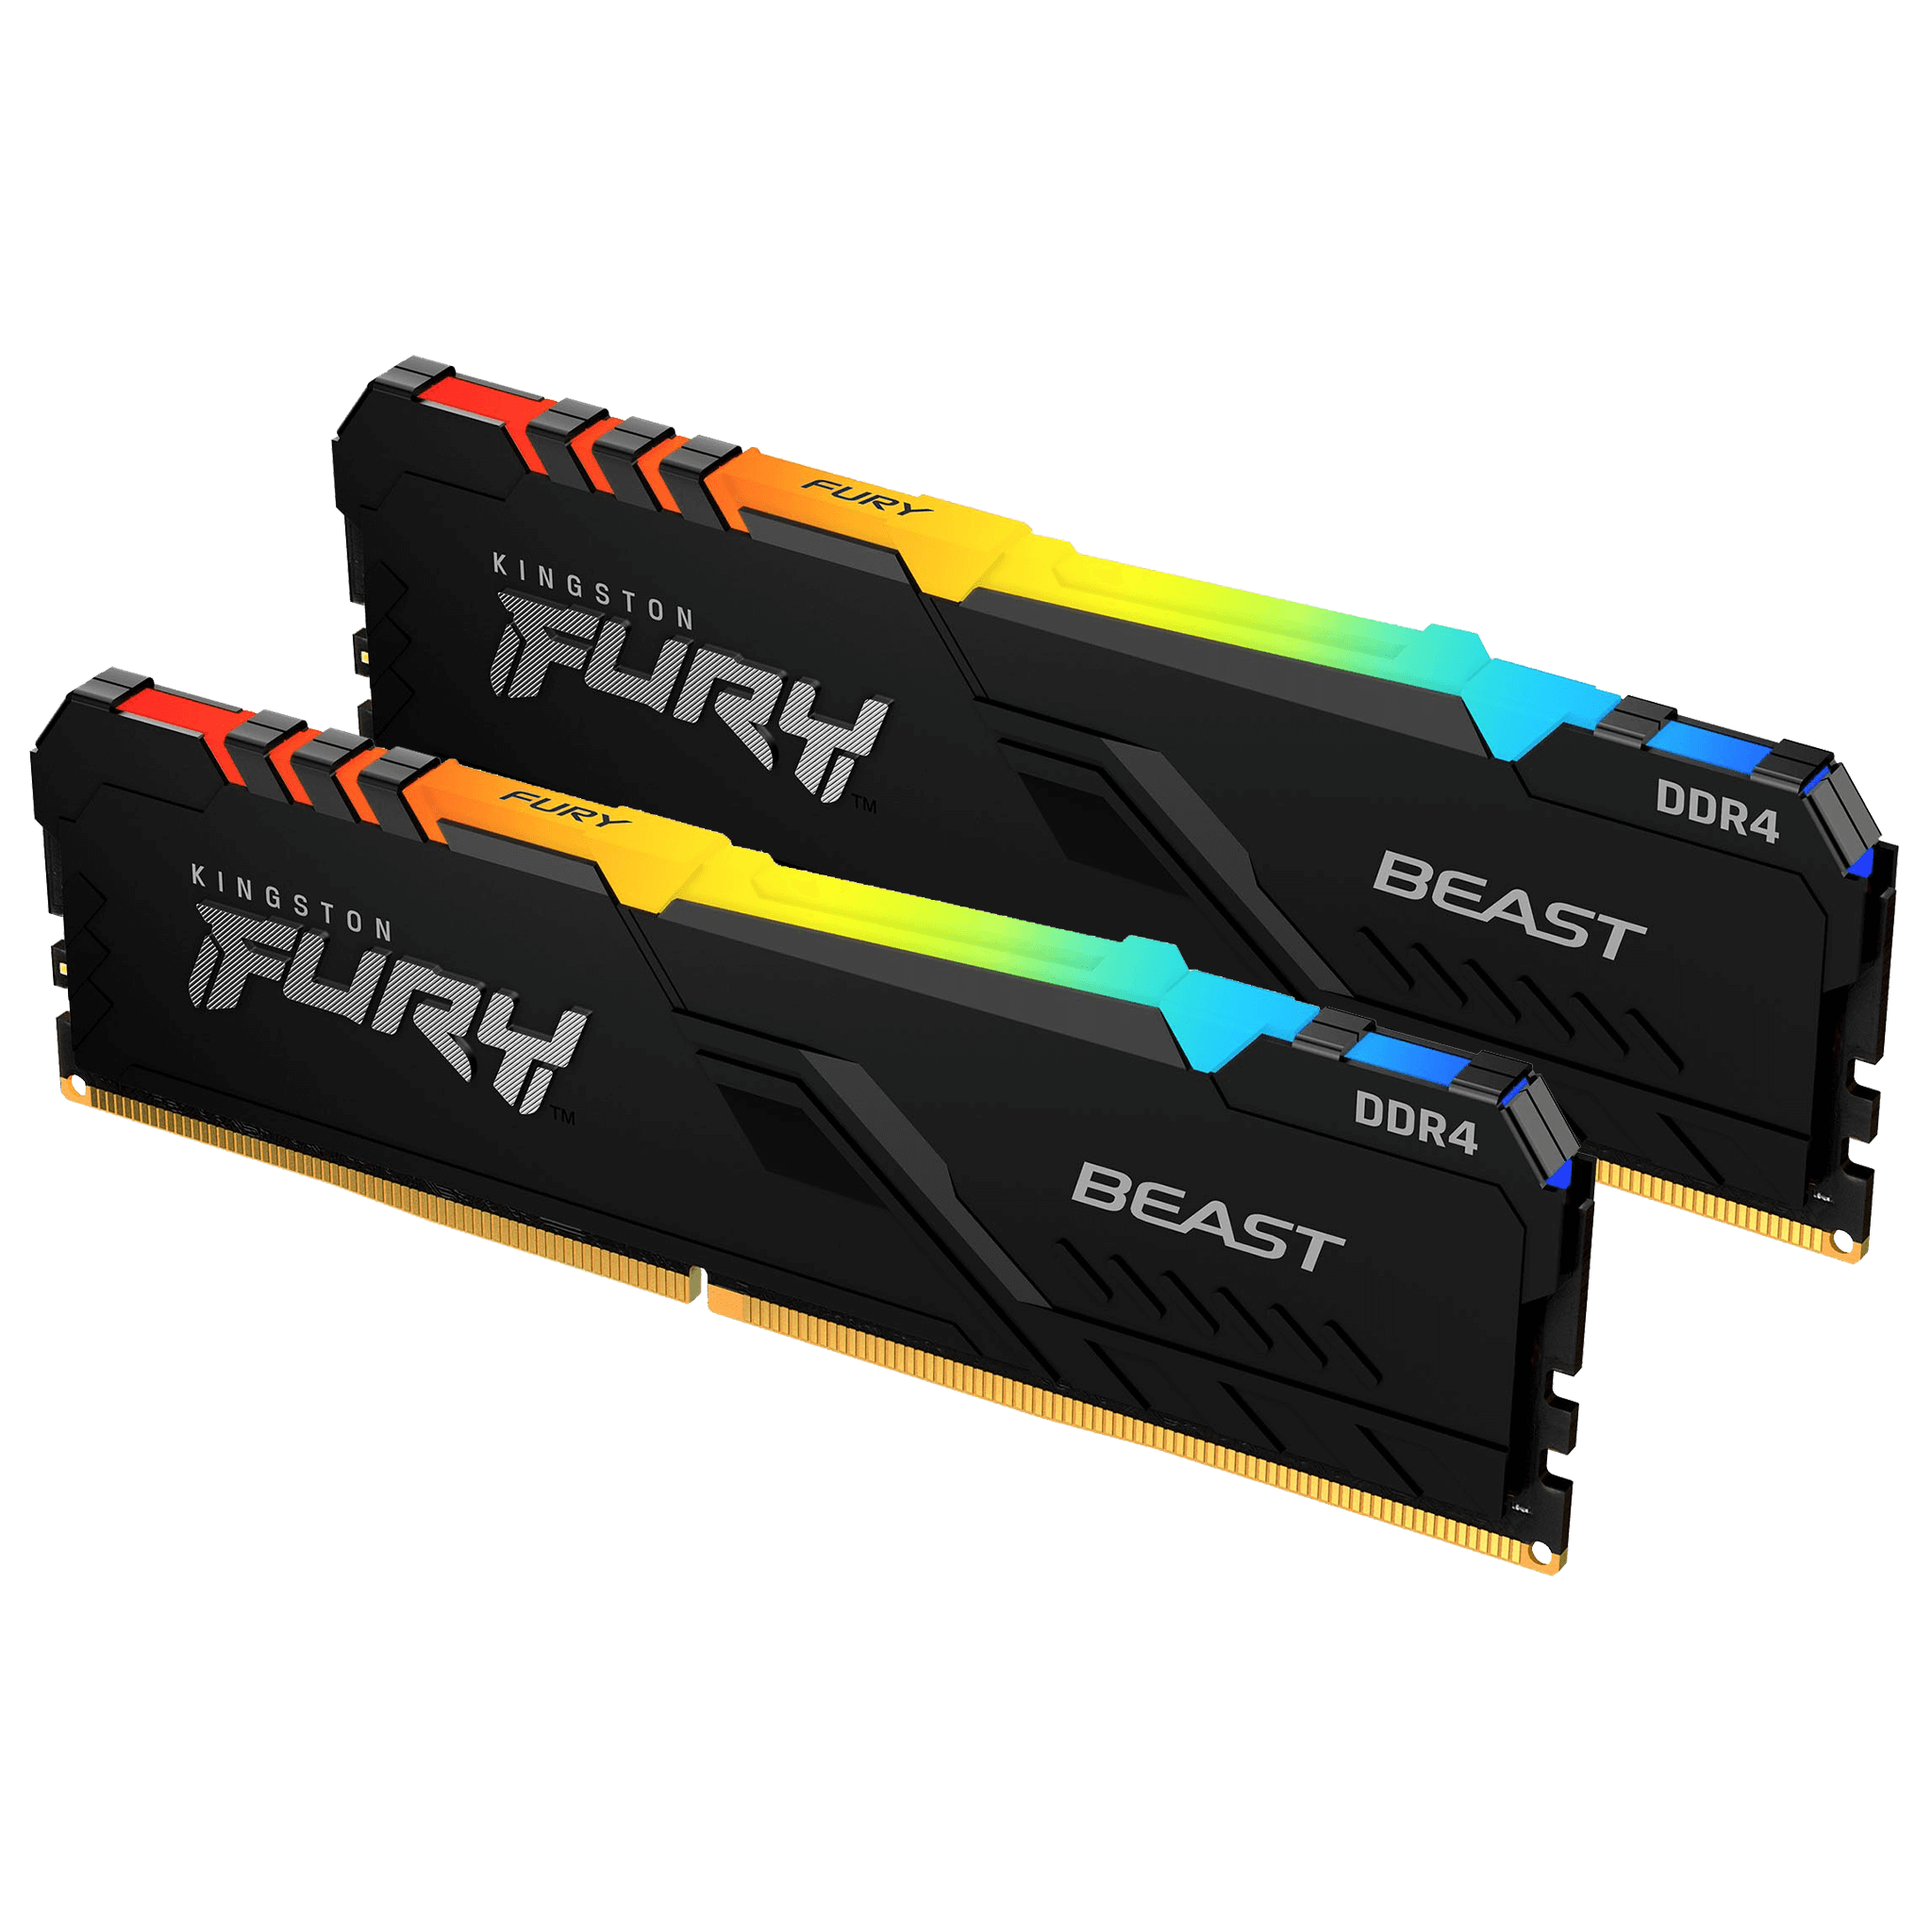 RAM KINGSTON FURY BEAST 16GB (8GBx2) DDR4 3200MHz RGB (BLACK)  NextStep  Reborn คอมประกอบ ของใหม่ คอมแบรนด์ คอมมือสอง คุณภาพดี ราคาถูก มีรับประกัน